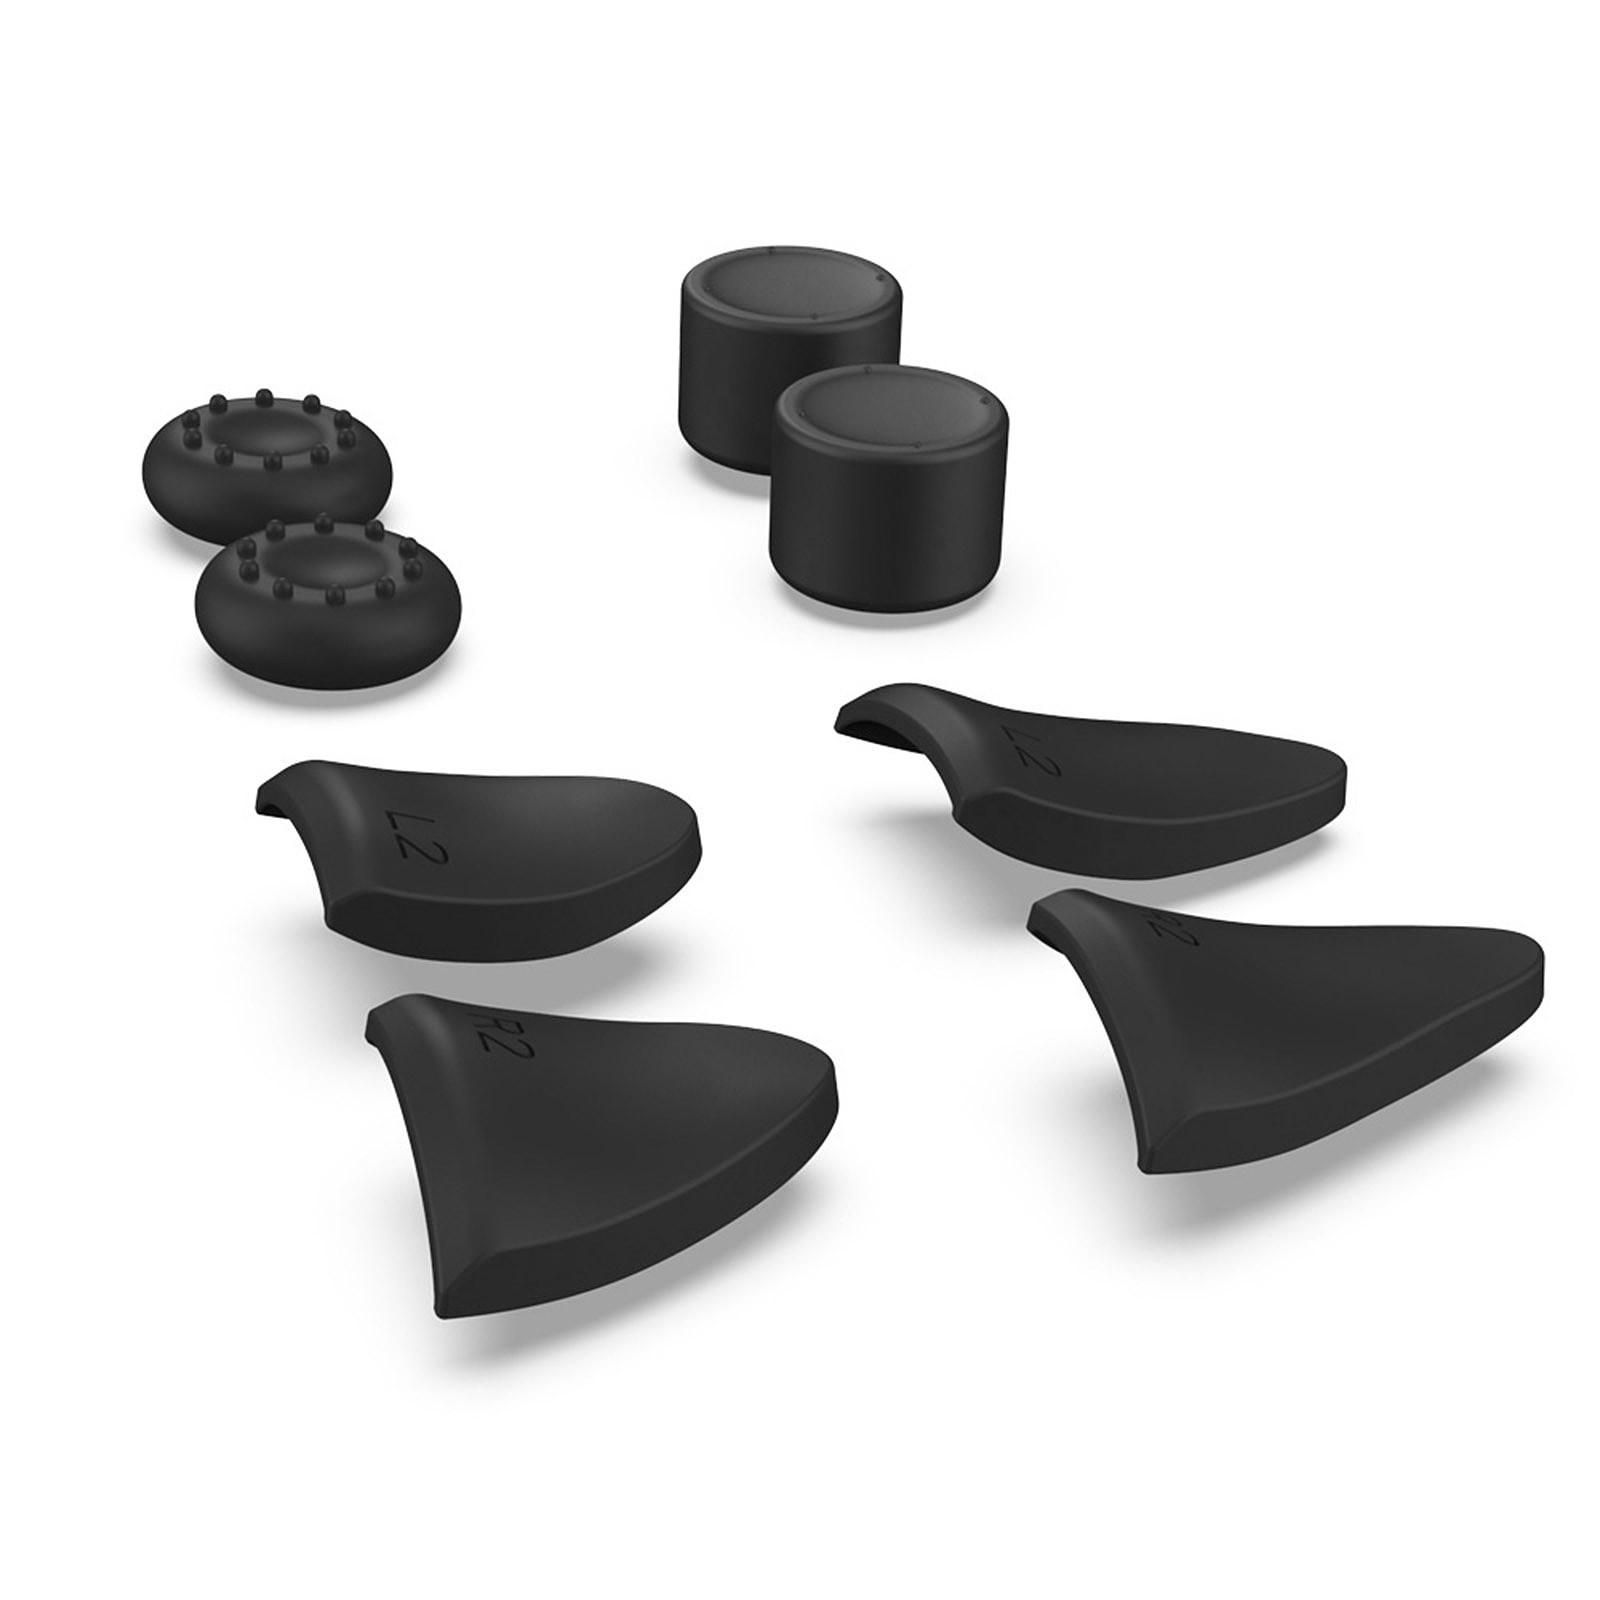 Avizar Kit d'accessoires manette PS5 Dualsense Extensions gachettes Poignee grips noir - Accessoires PS5 Avizar